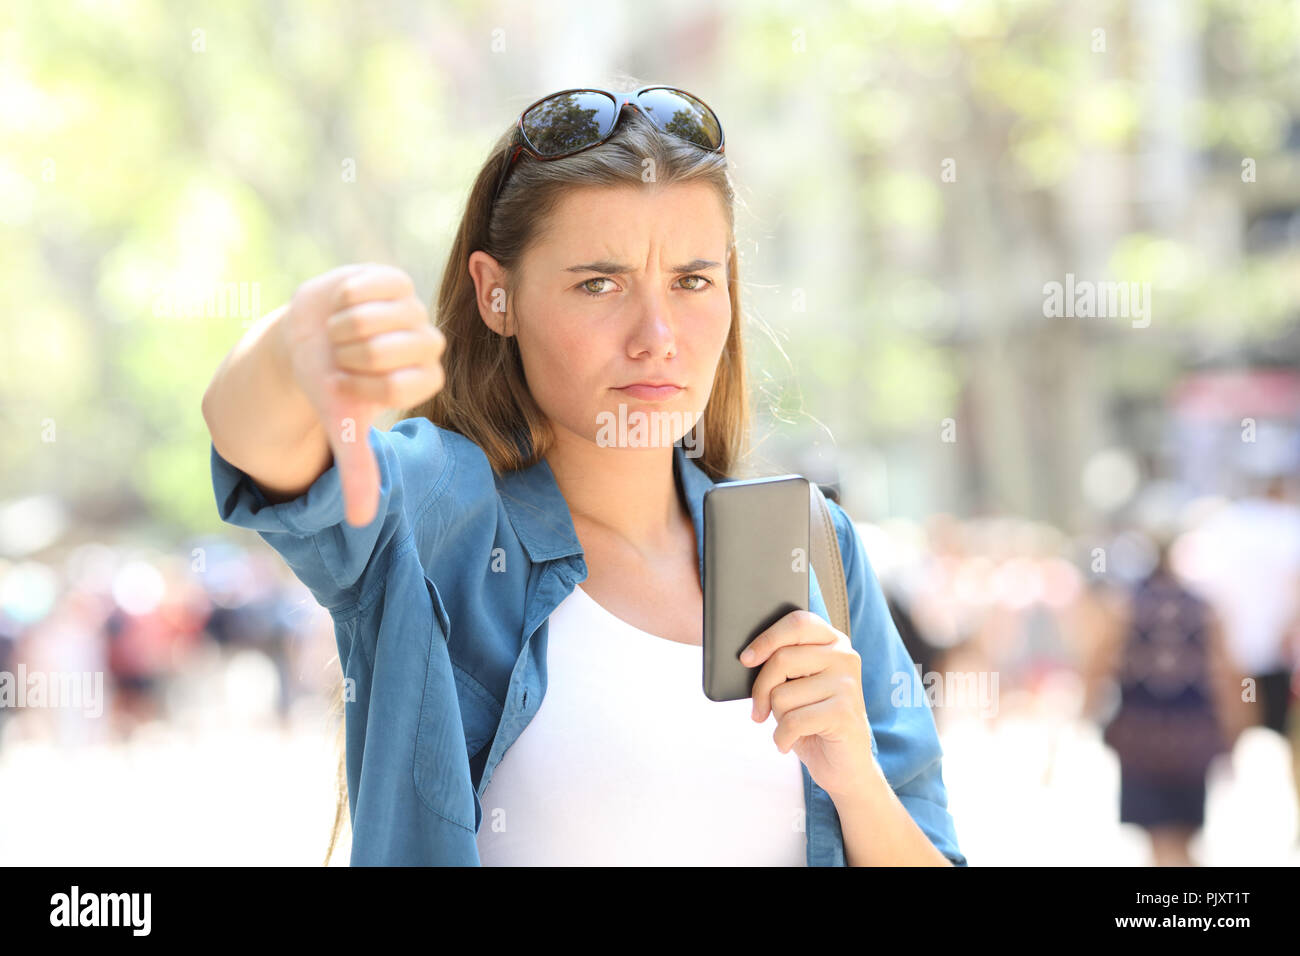 Verärgert Frau ein smart phone an Kamera suchen mit Daumen gedrückt halten auf der Straße Stockfoto